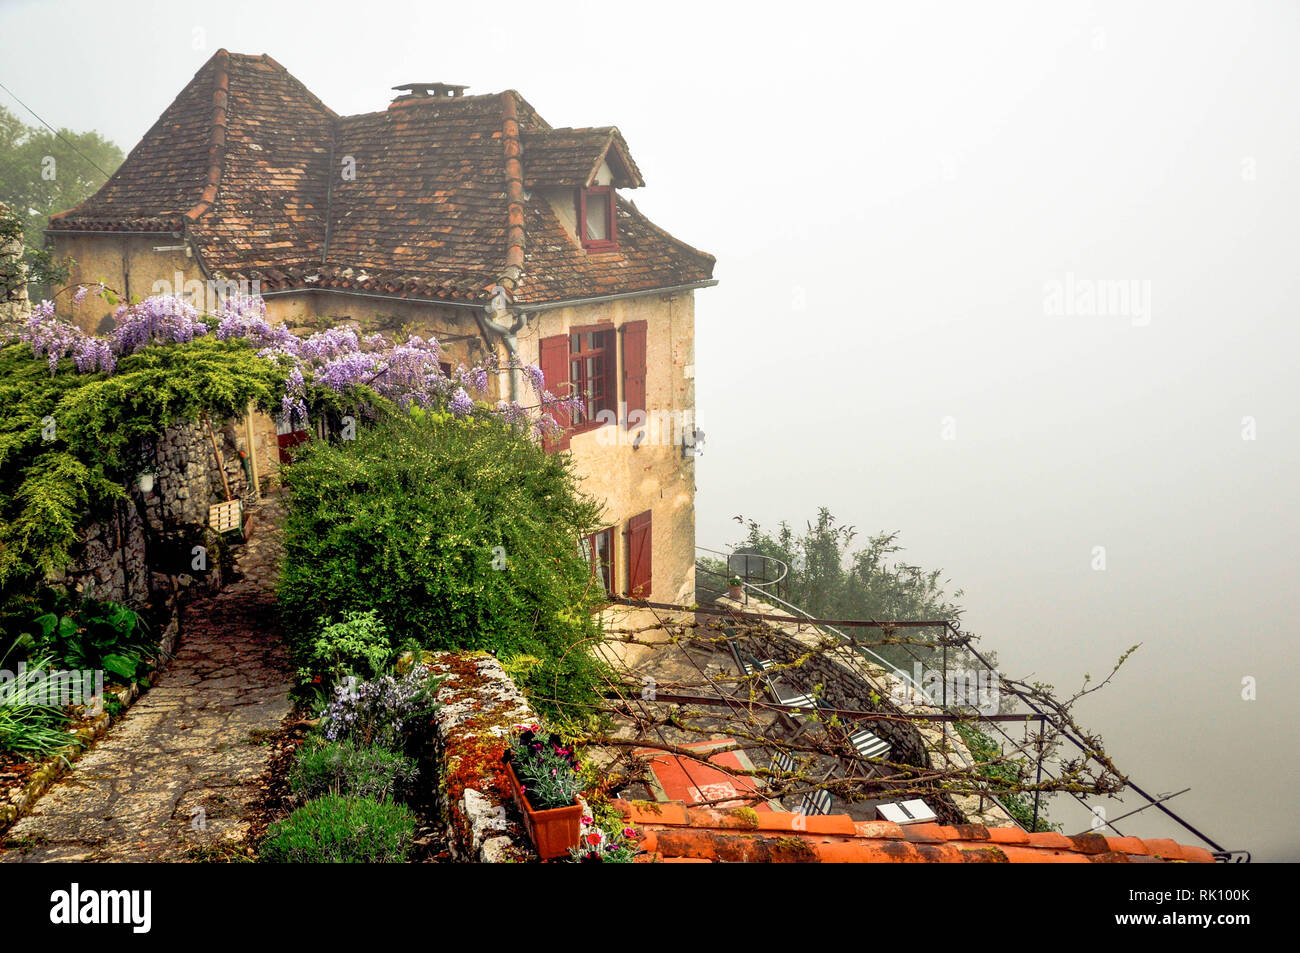 Des siècles old stone house se trouve dans le brouillard au bord de la falaise surplombant la rivière Lot dans le sud-ouest de la France ville médiévale de Saint Cirque Lapopie. Banque D'Images